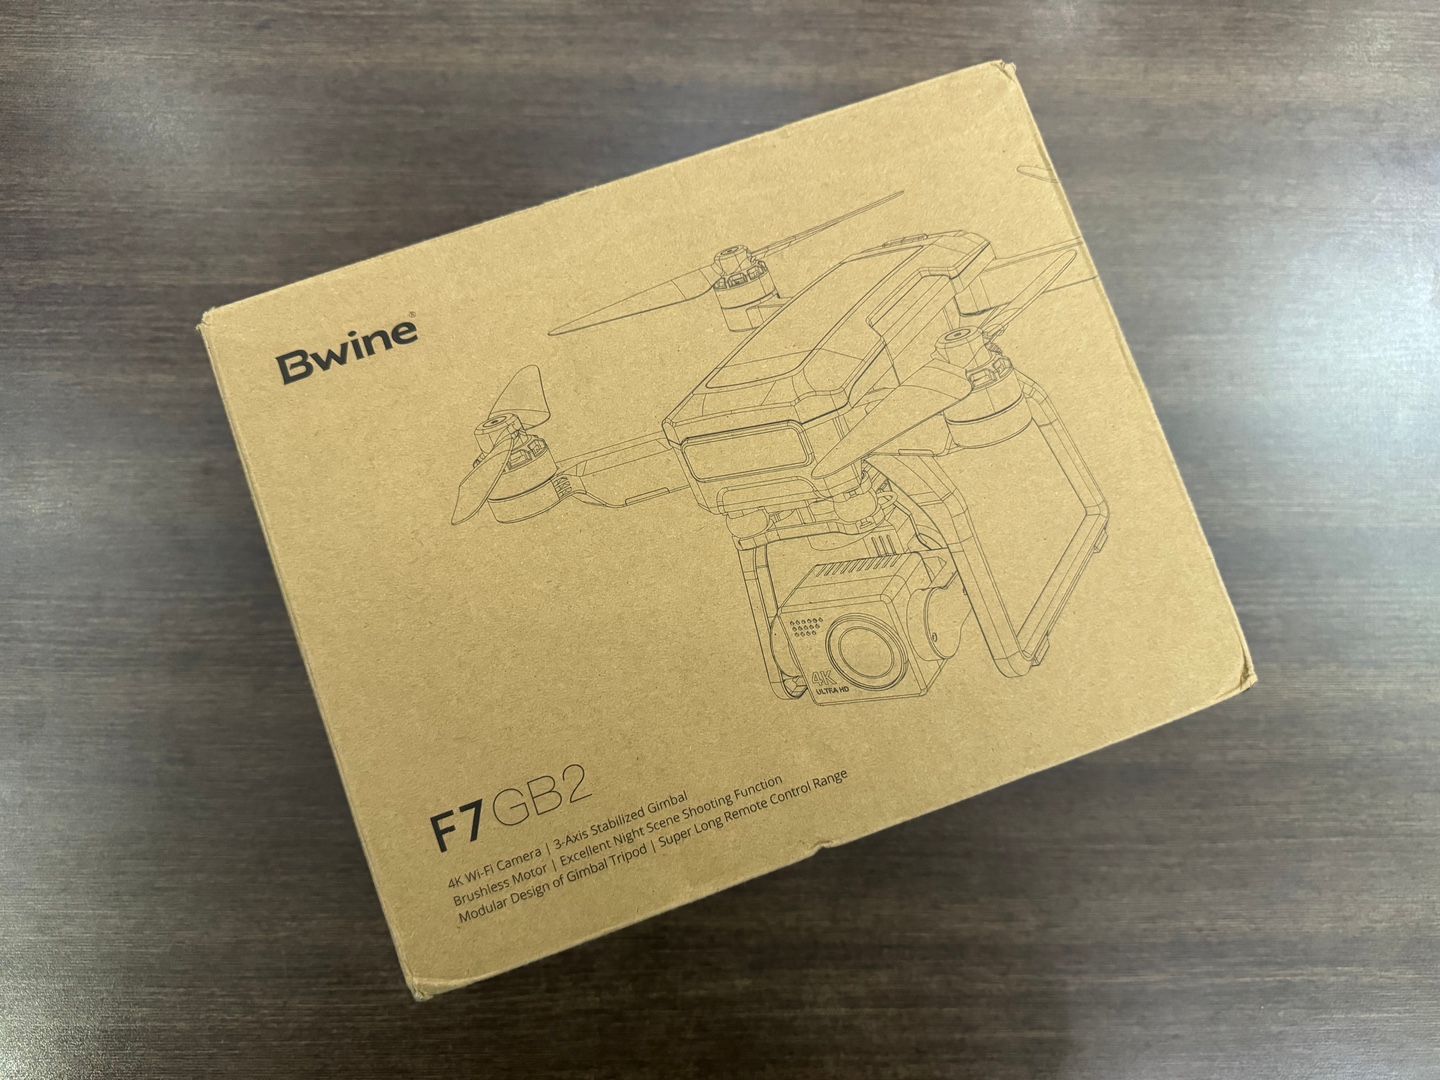 camaras y audio - Drone Bwine F7GB2 Nuevo Sellado Completo + EXTRAS!!, 1